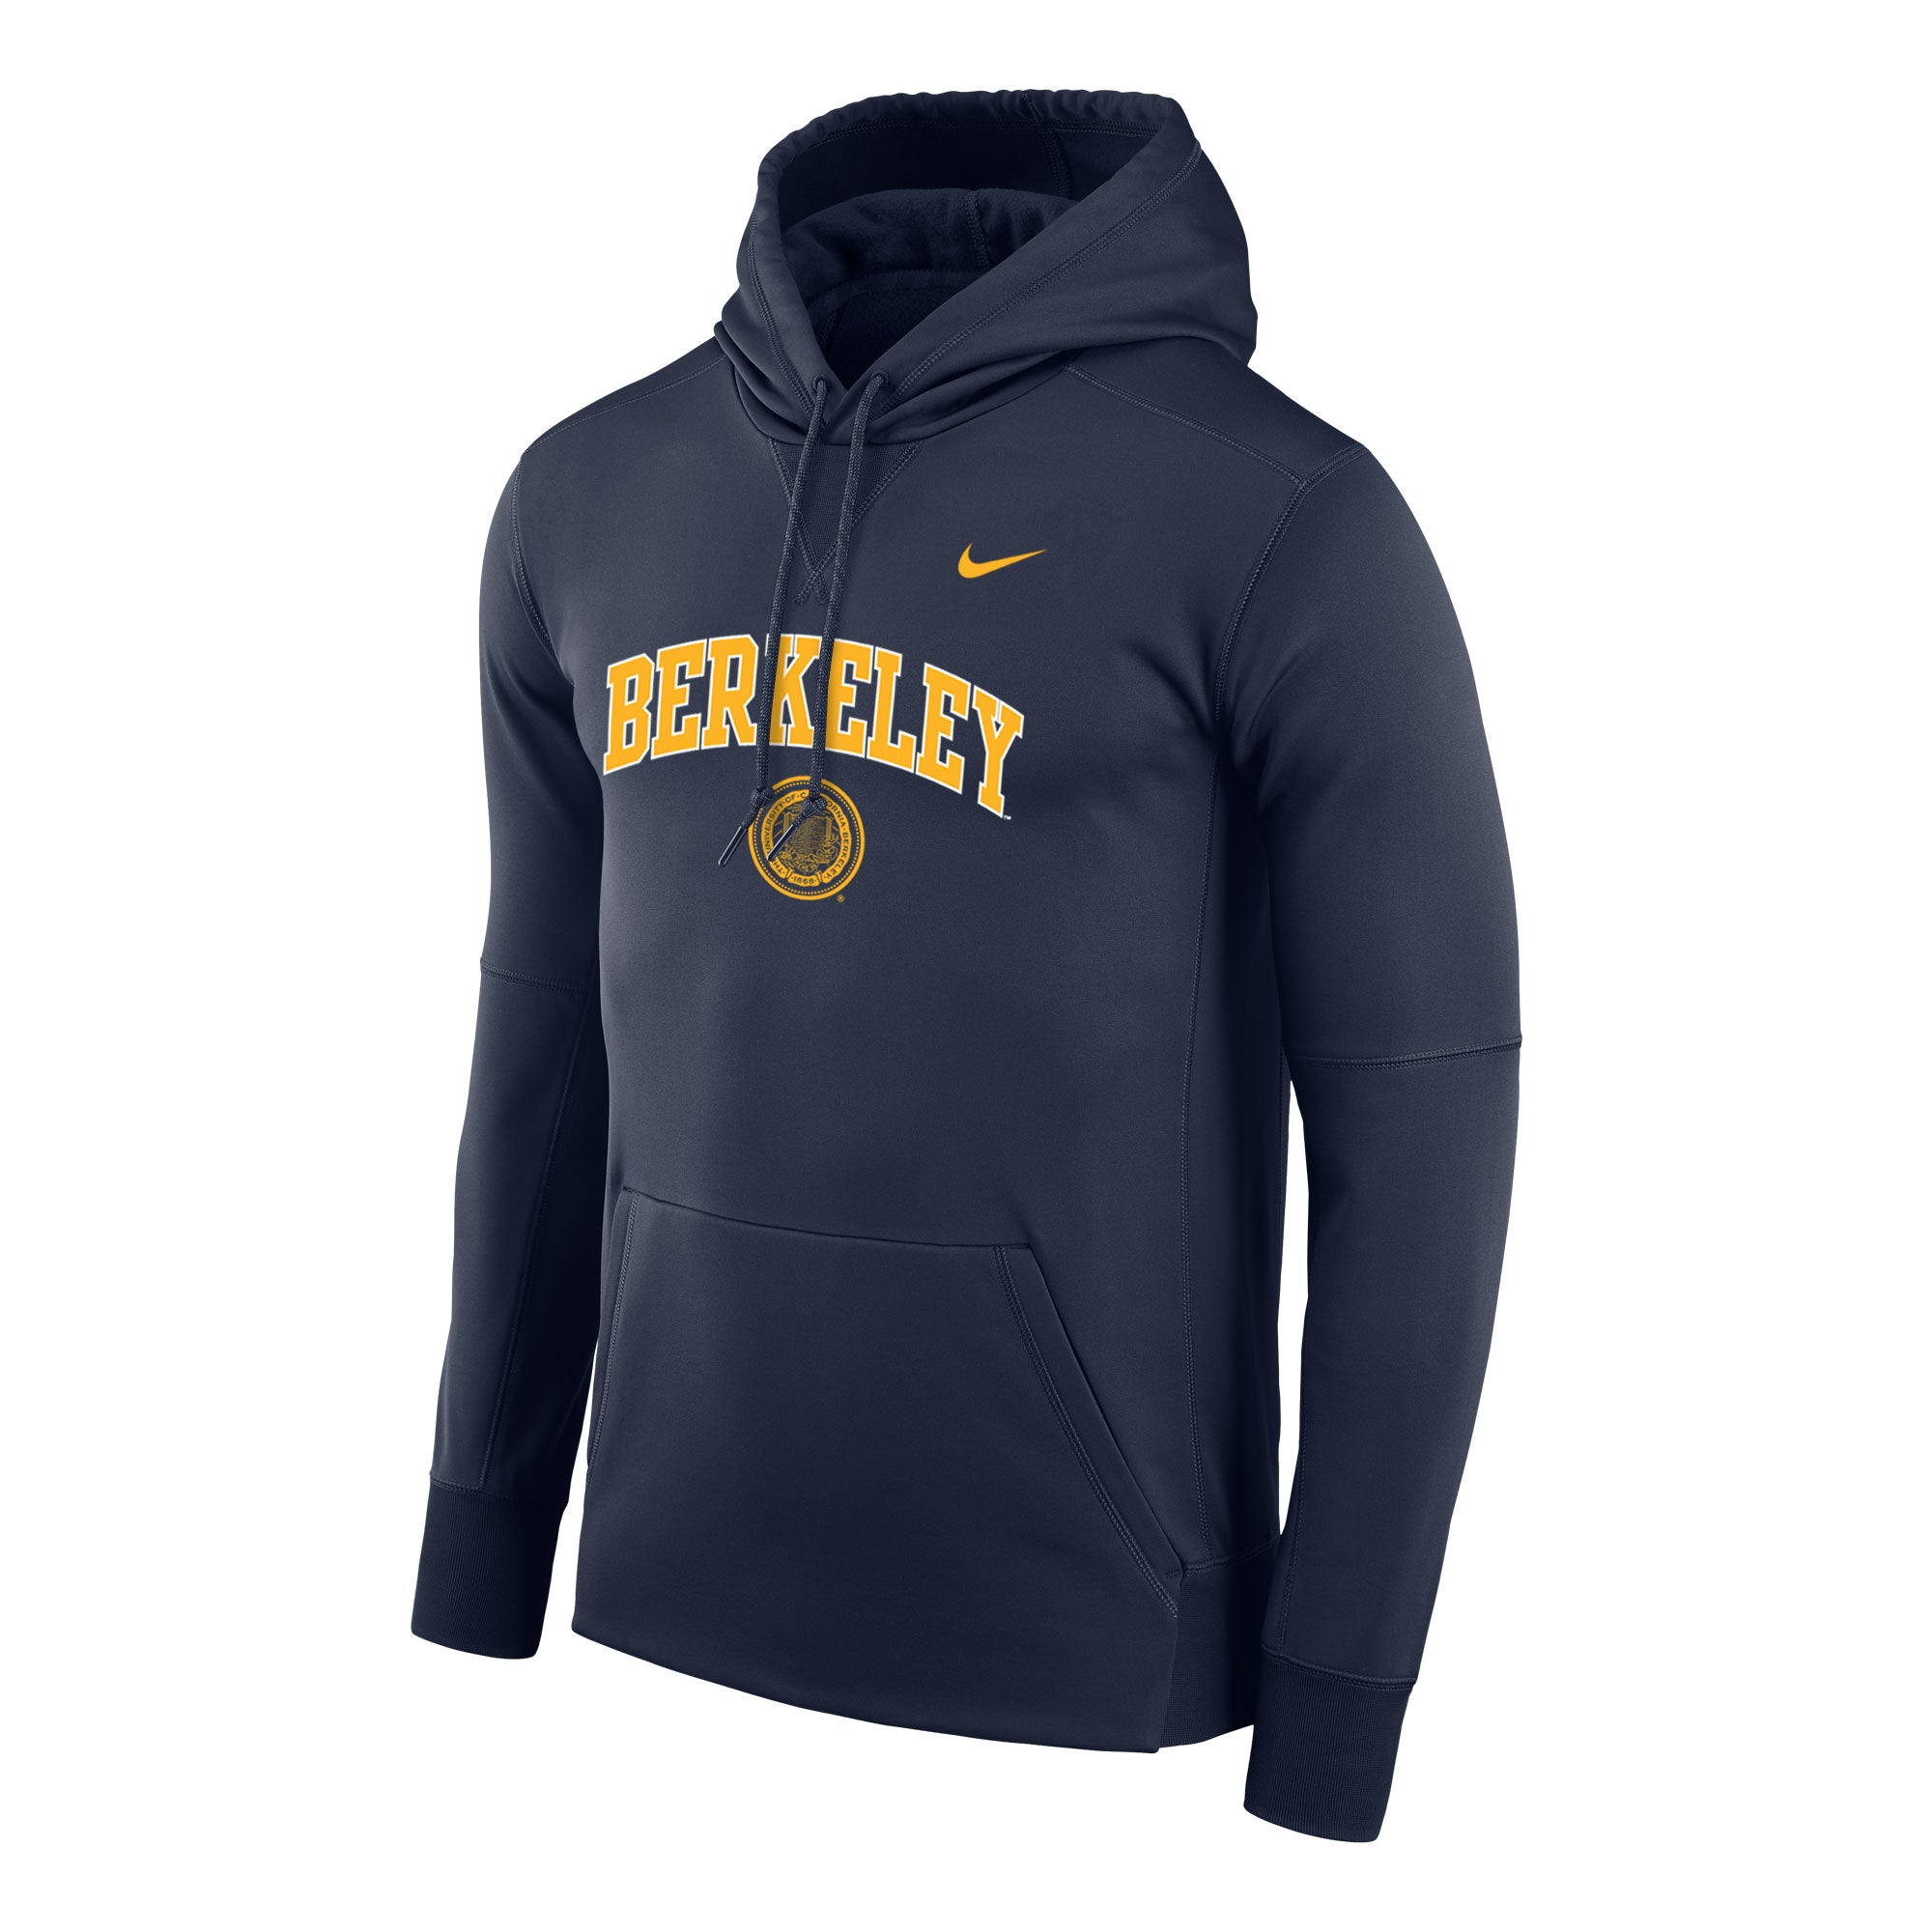 U.C. Berkeley Cal arch & seal Nike Therma fleece hoodie sweatshirt-Nav ...